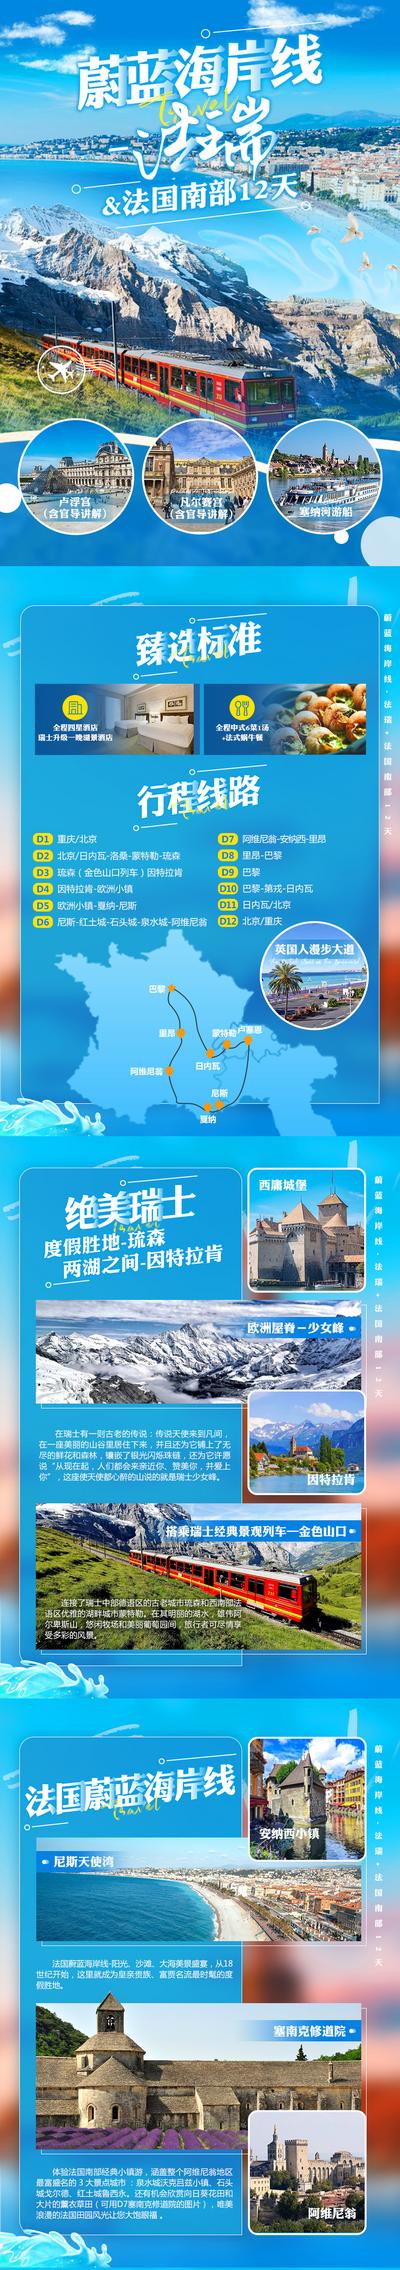 南门网 广告 海报 旅游 法国 美食 海浪 火车 美景 旅行 专题